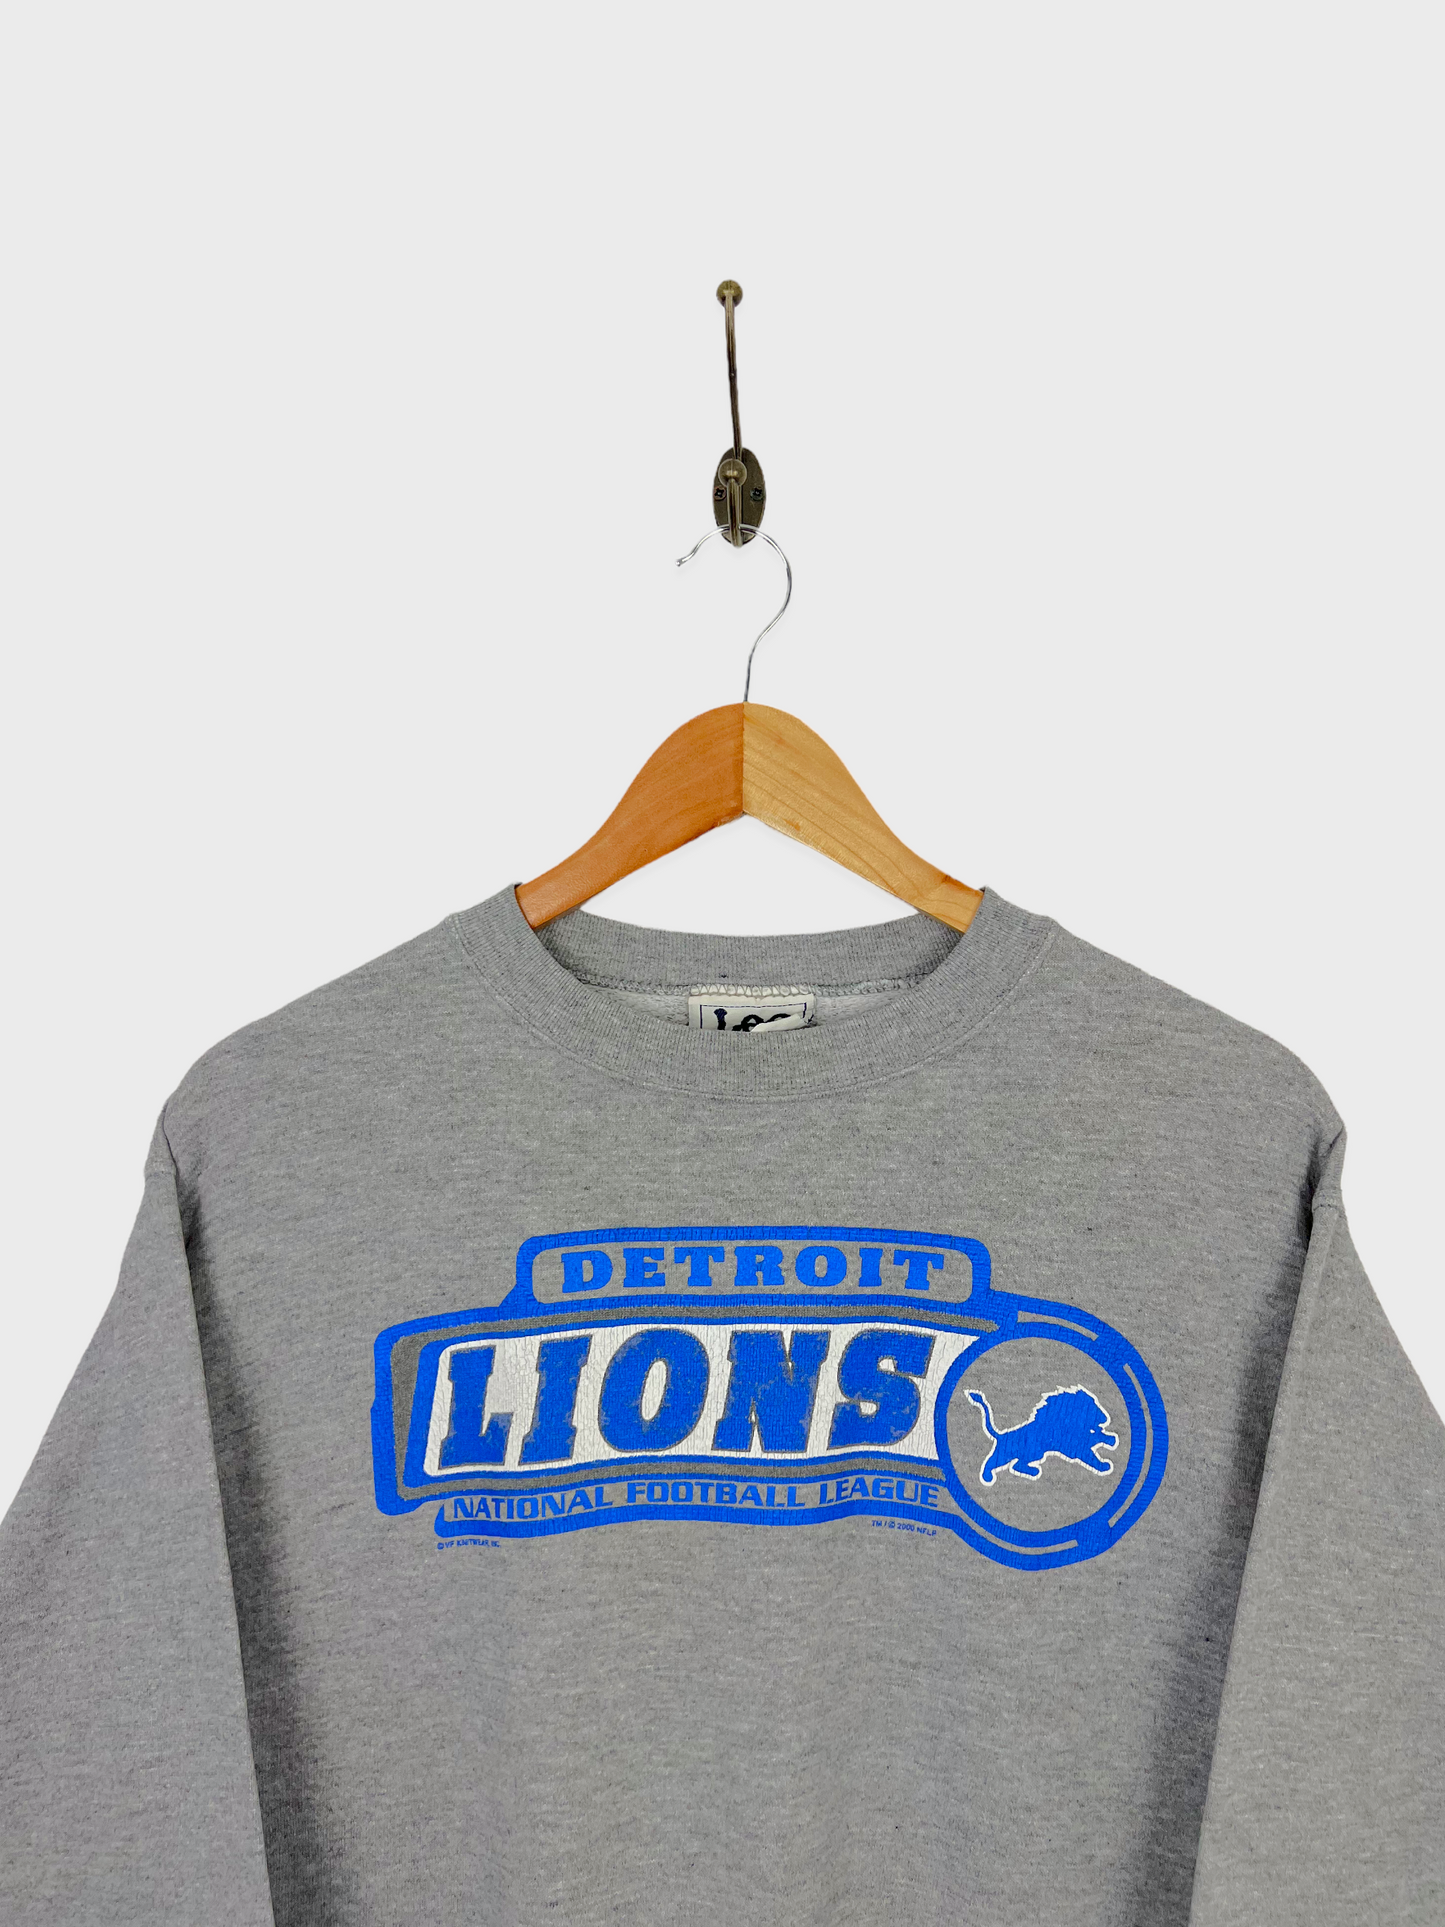 Detroit Lions NFL Vintage Sweatshirt Size 6